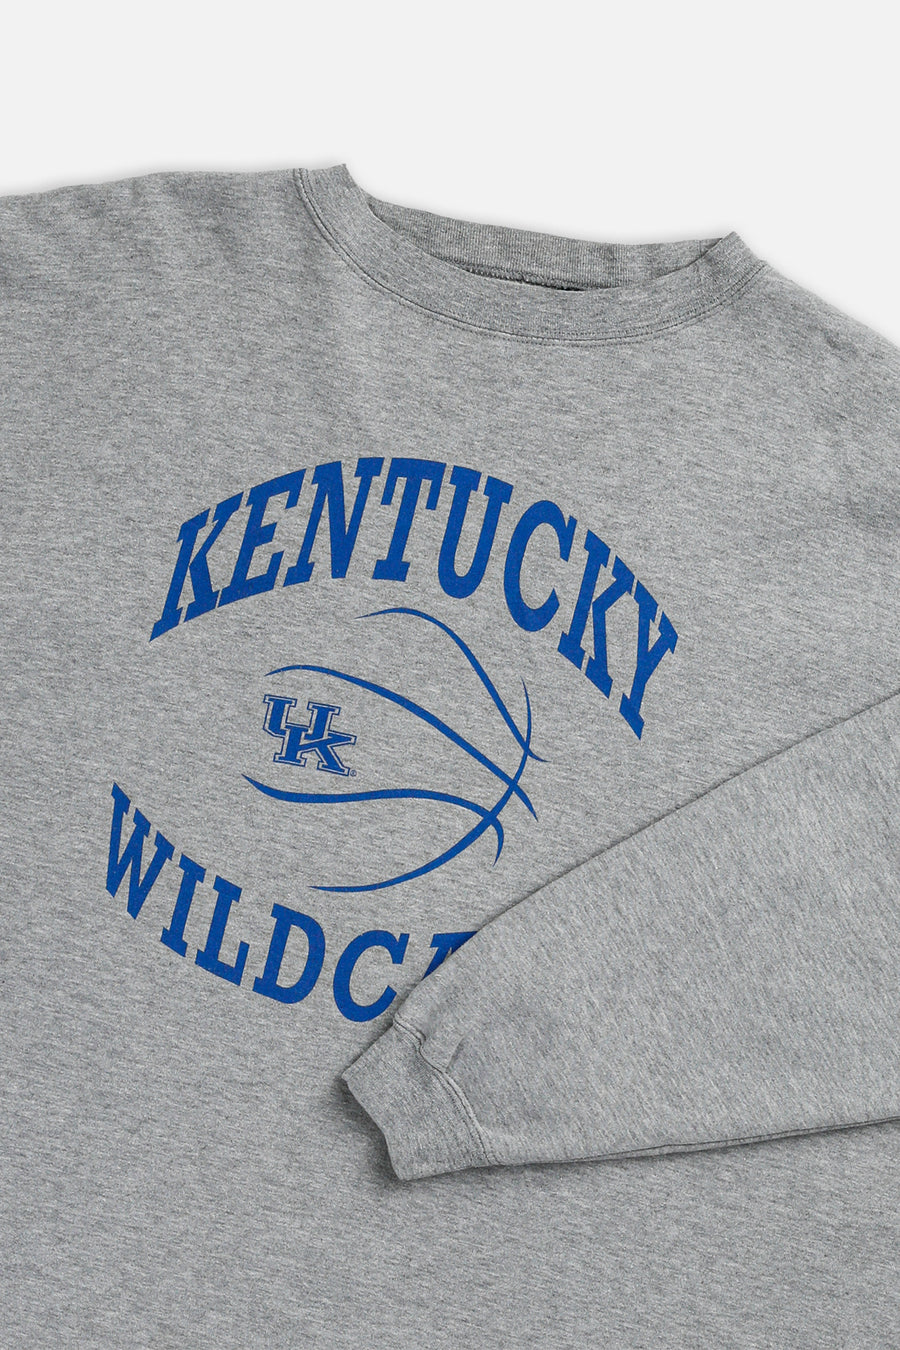 Vintage Kentucky Wildcats Sweatshirt - L